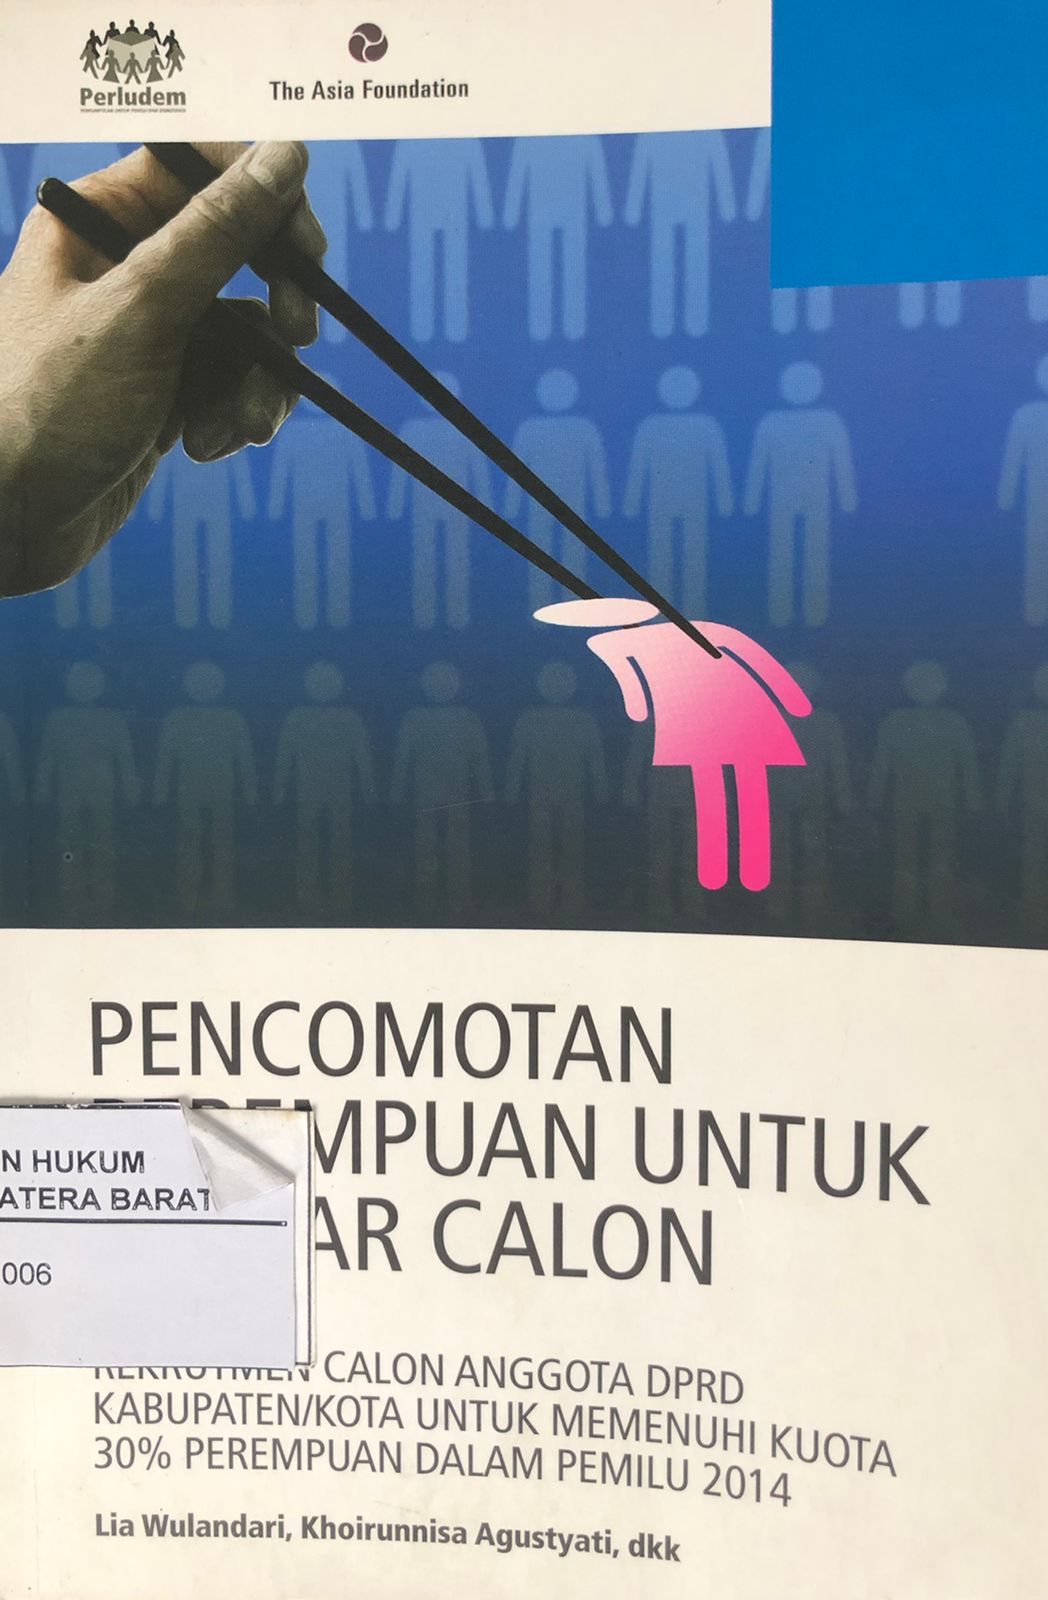 Pencomotan Perempuan Untuk Daftar Calon Rekrutmen Calon Anggota Dprd Kabupaten/Kota Untuk Memenuhi Kuota 30% Perempuan dalam Pemilu 2014